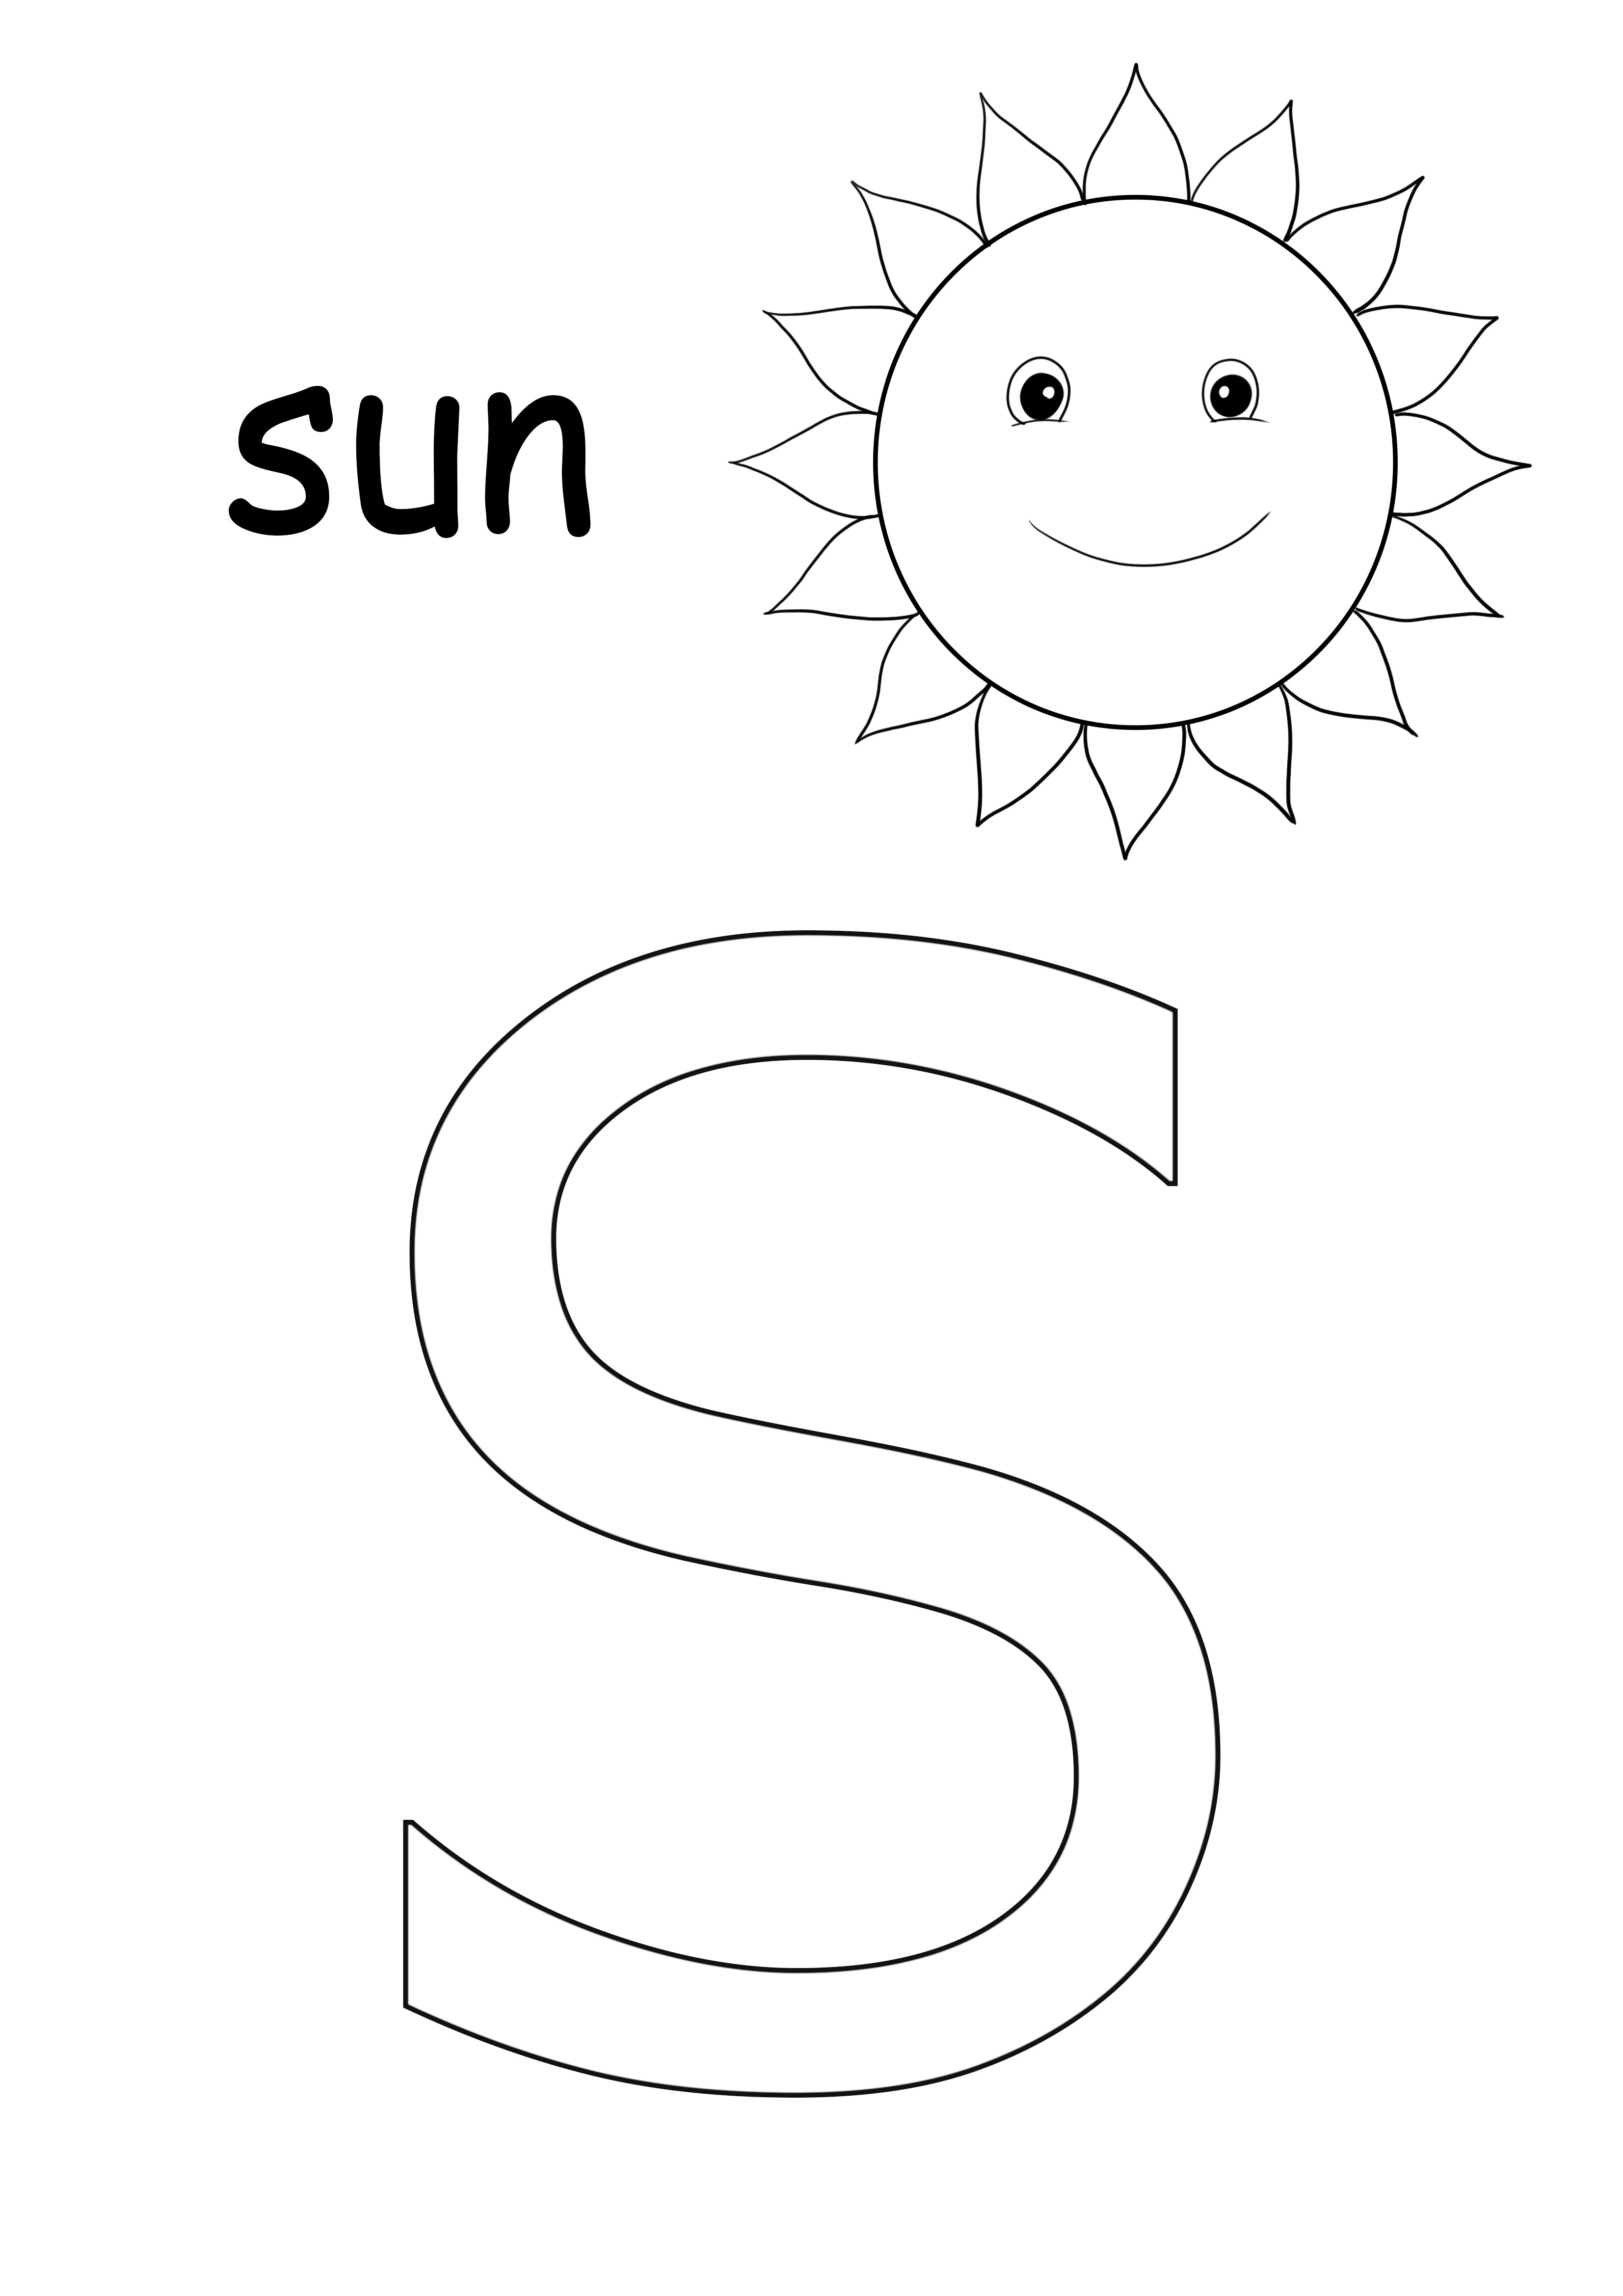 S este pentru foaia de colorat soare pentru a imprima gratuit și colorat